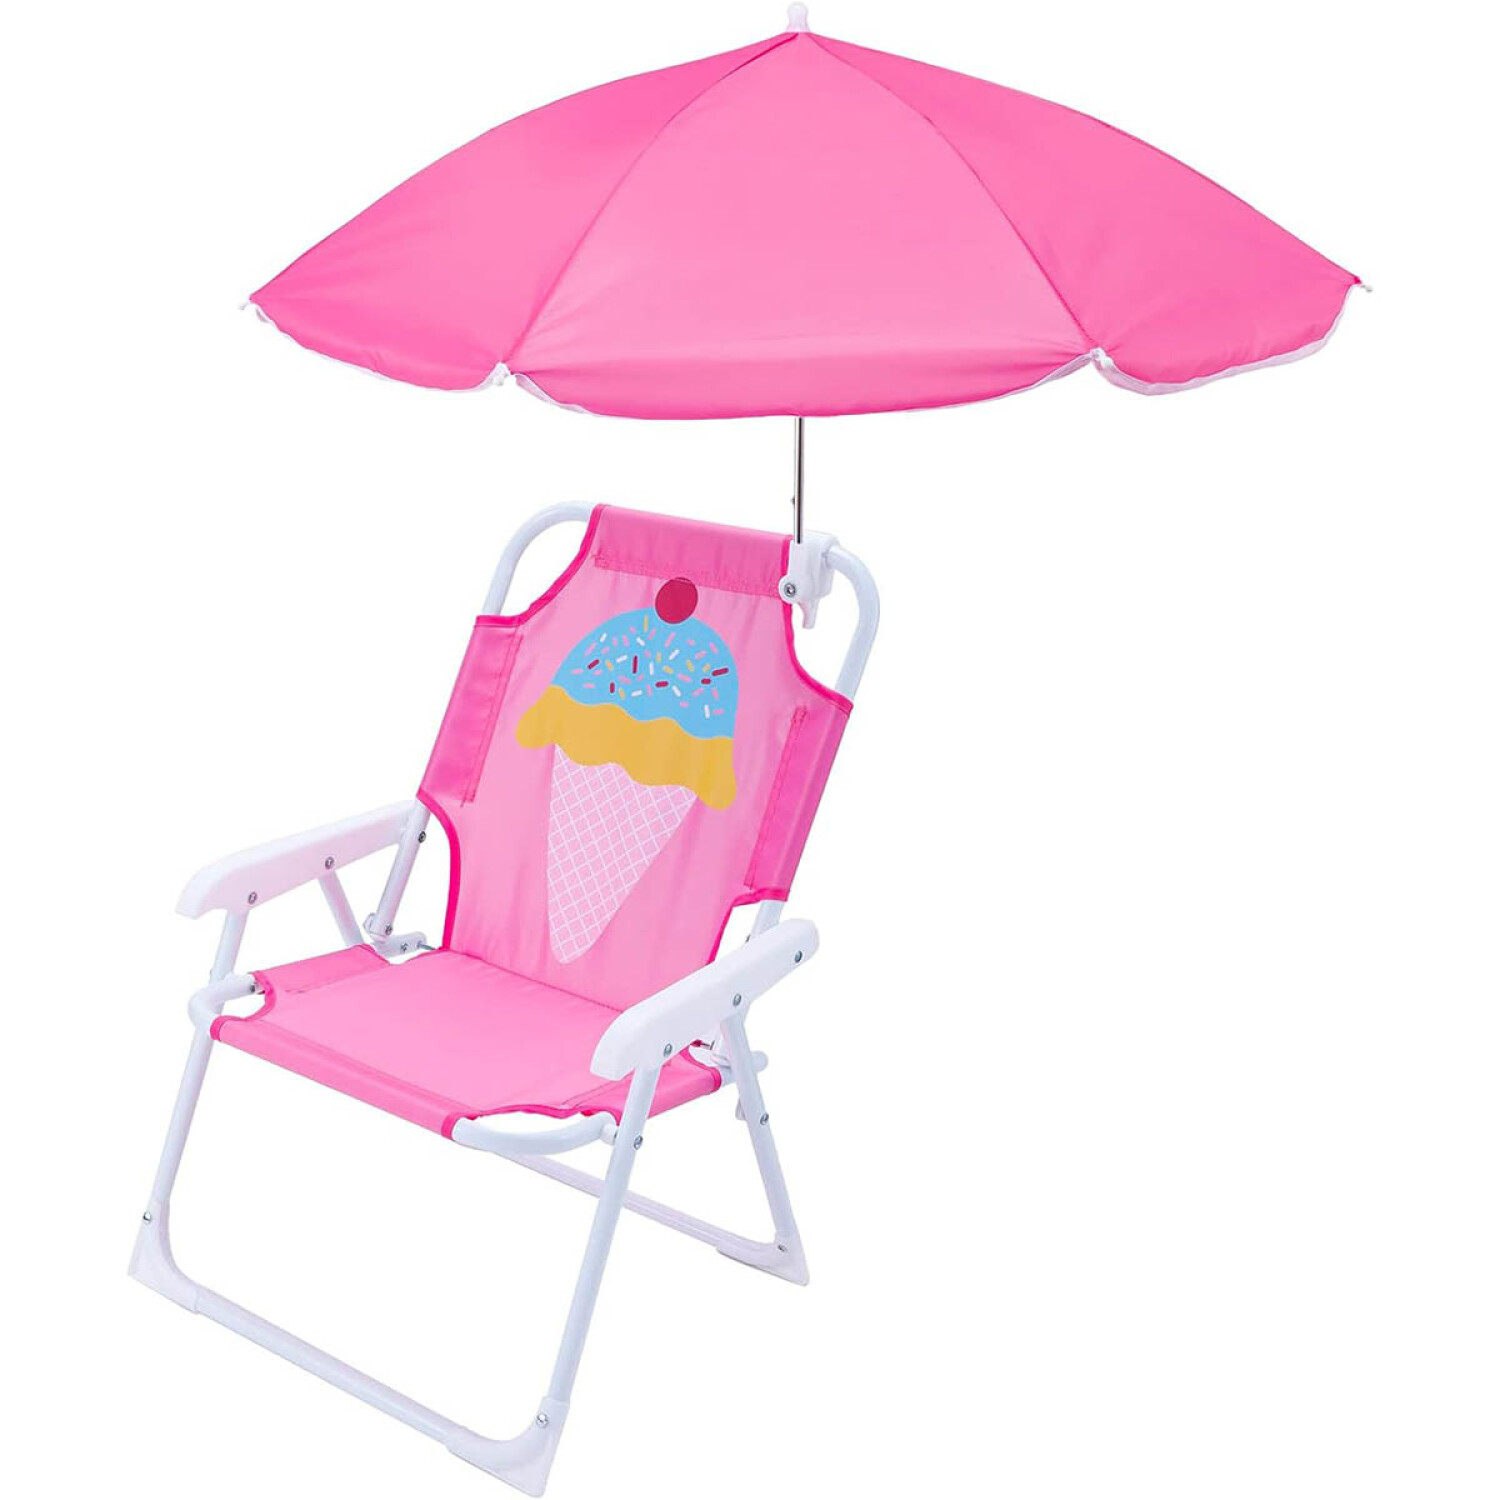 Sombrilla personal para silla playa azul